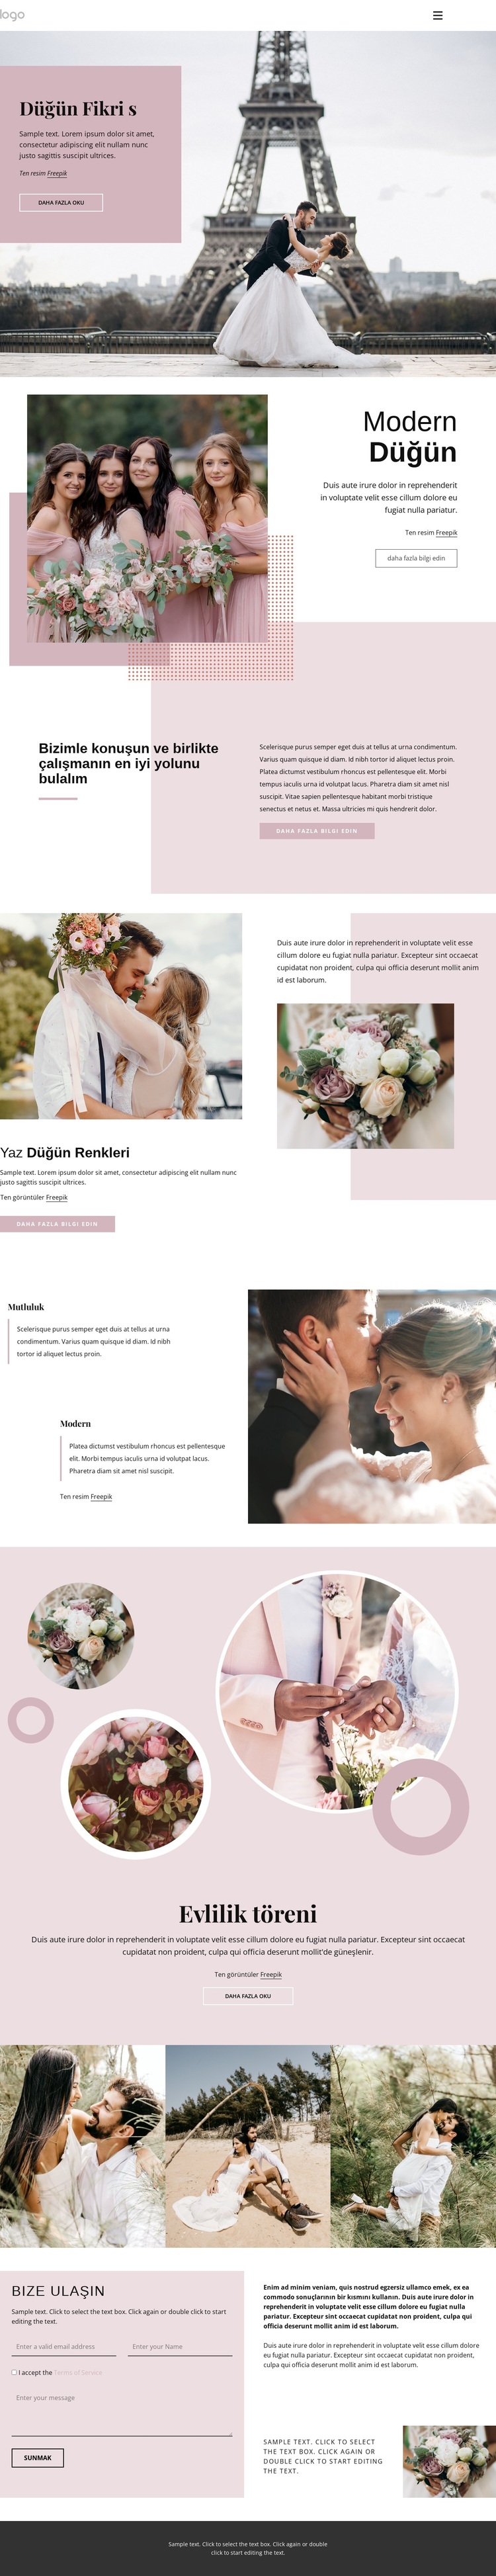 Eşsiz düğün töreni WordPress Teması